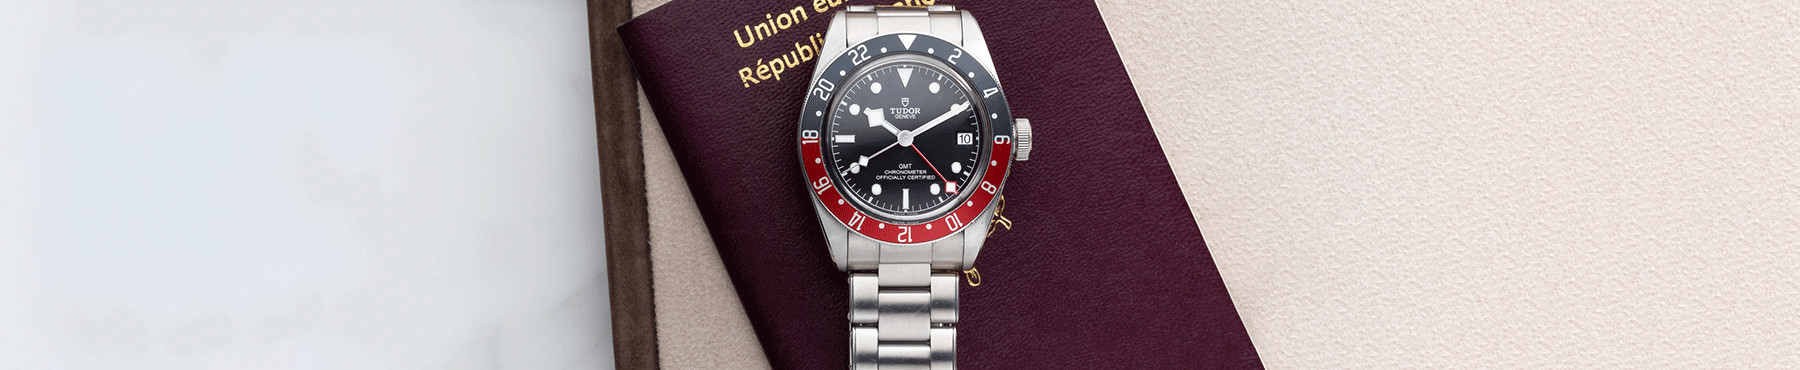 Nos montres vintage et d'occasion entre 3000 et 5000 euros